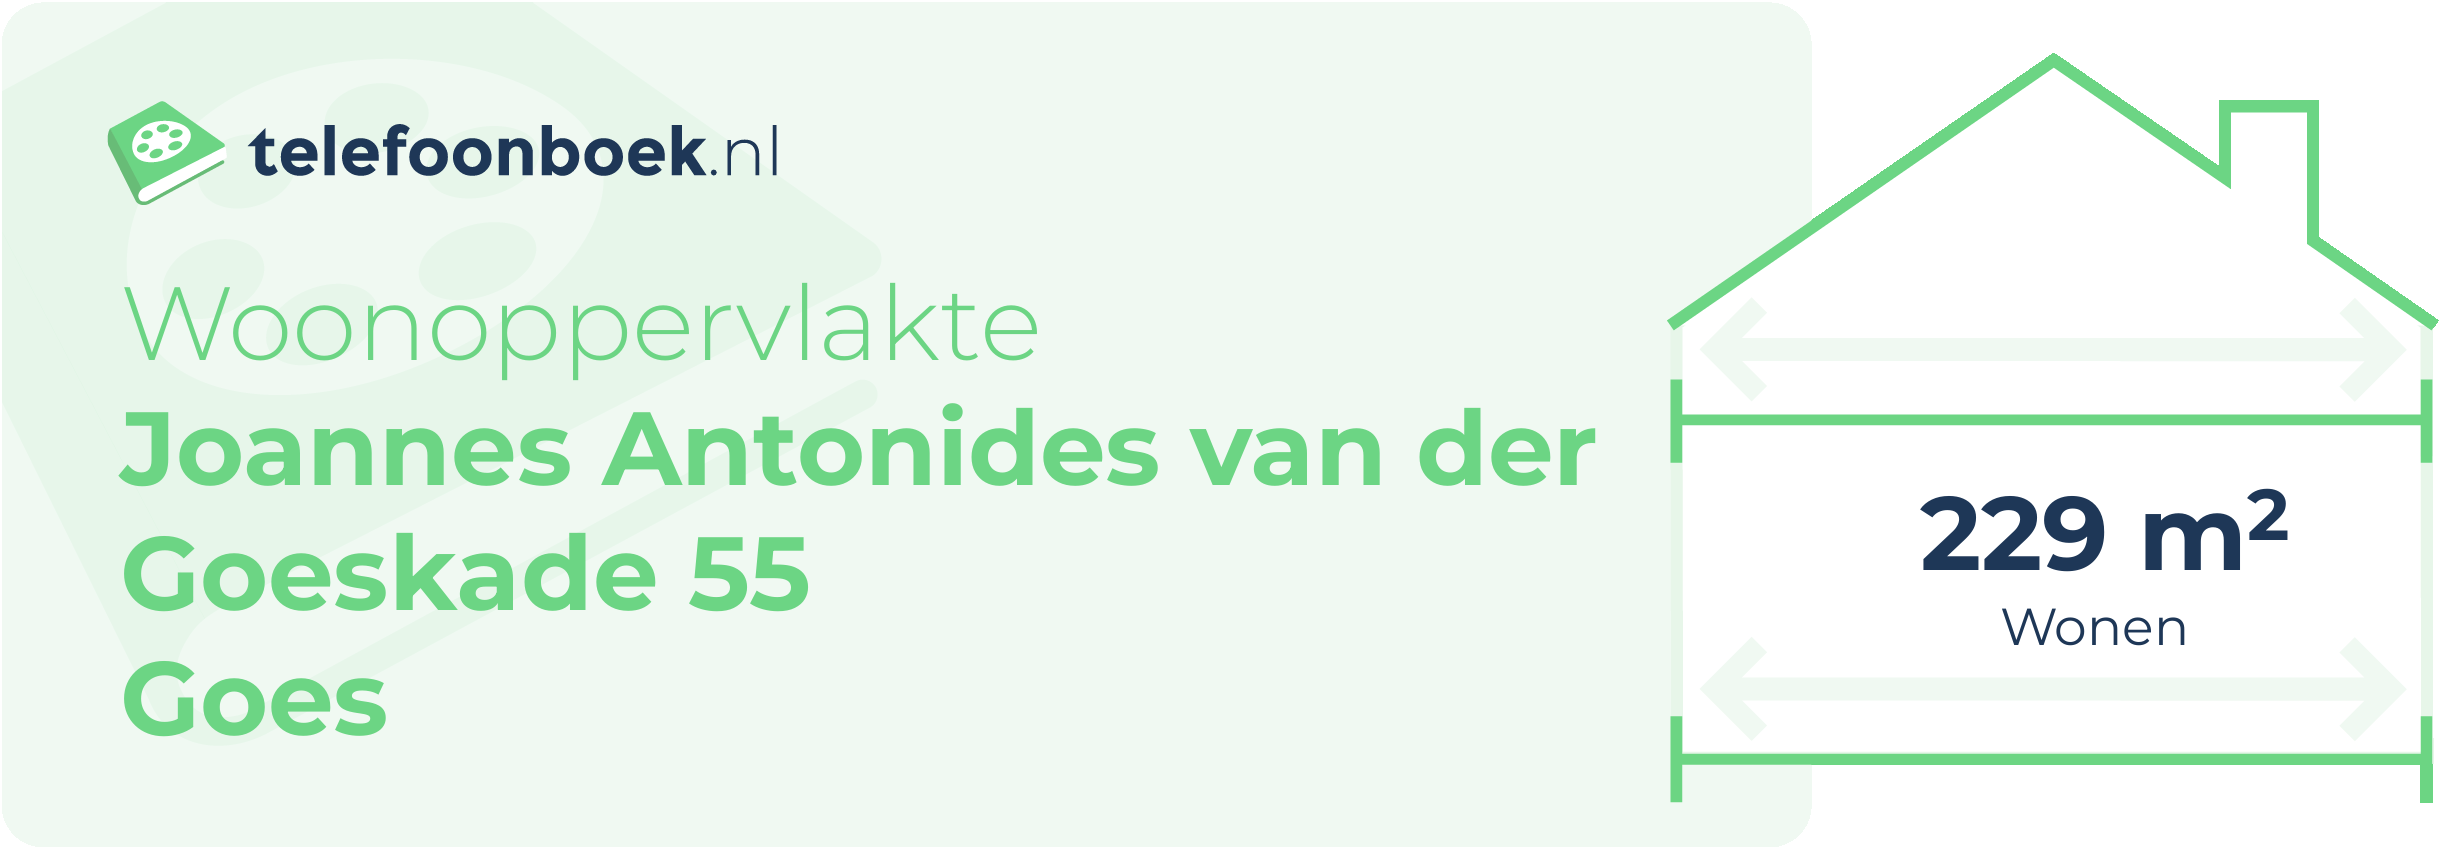 Woonoppervlakte Joannes Antonides Van Der Goeskade 55 Goes